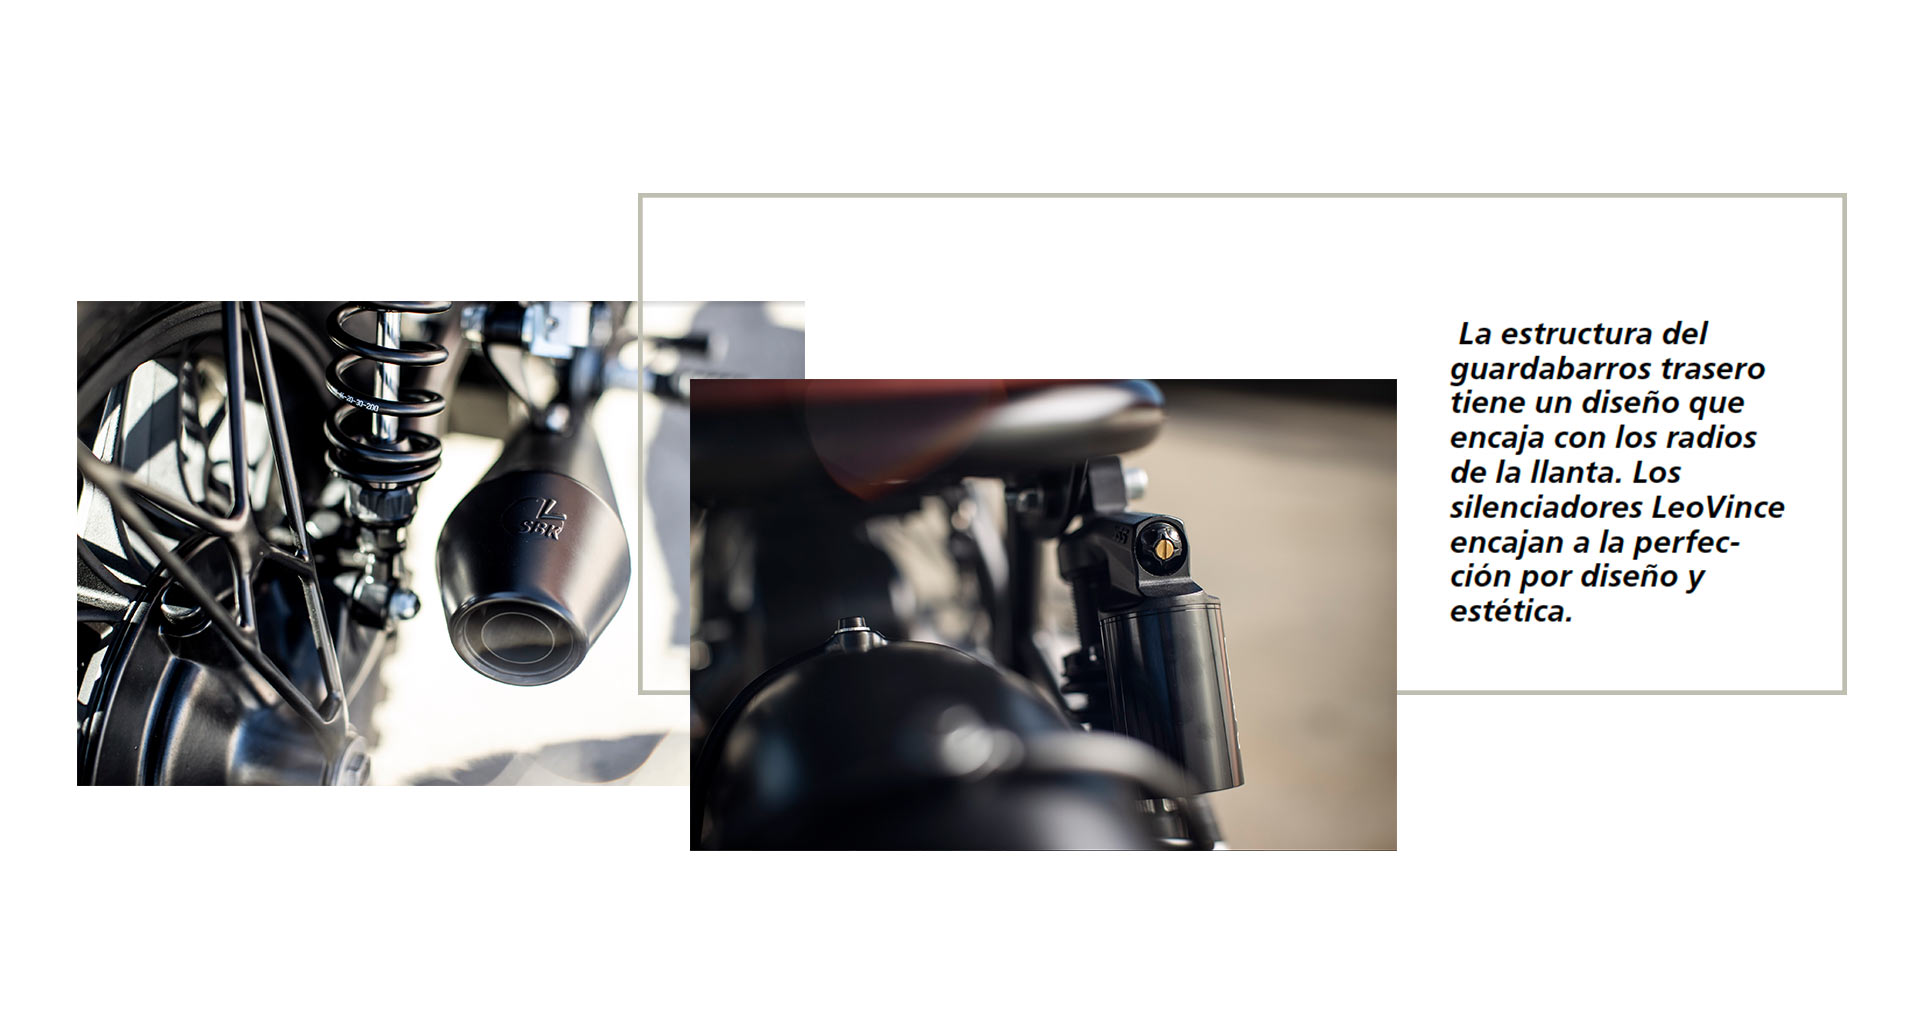 revista fuel motociclismo - revista fuel - CRD2020 - BMW R100 - jaime de diego - jaime colsa - 1